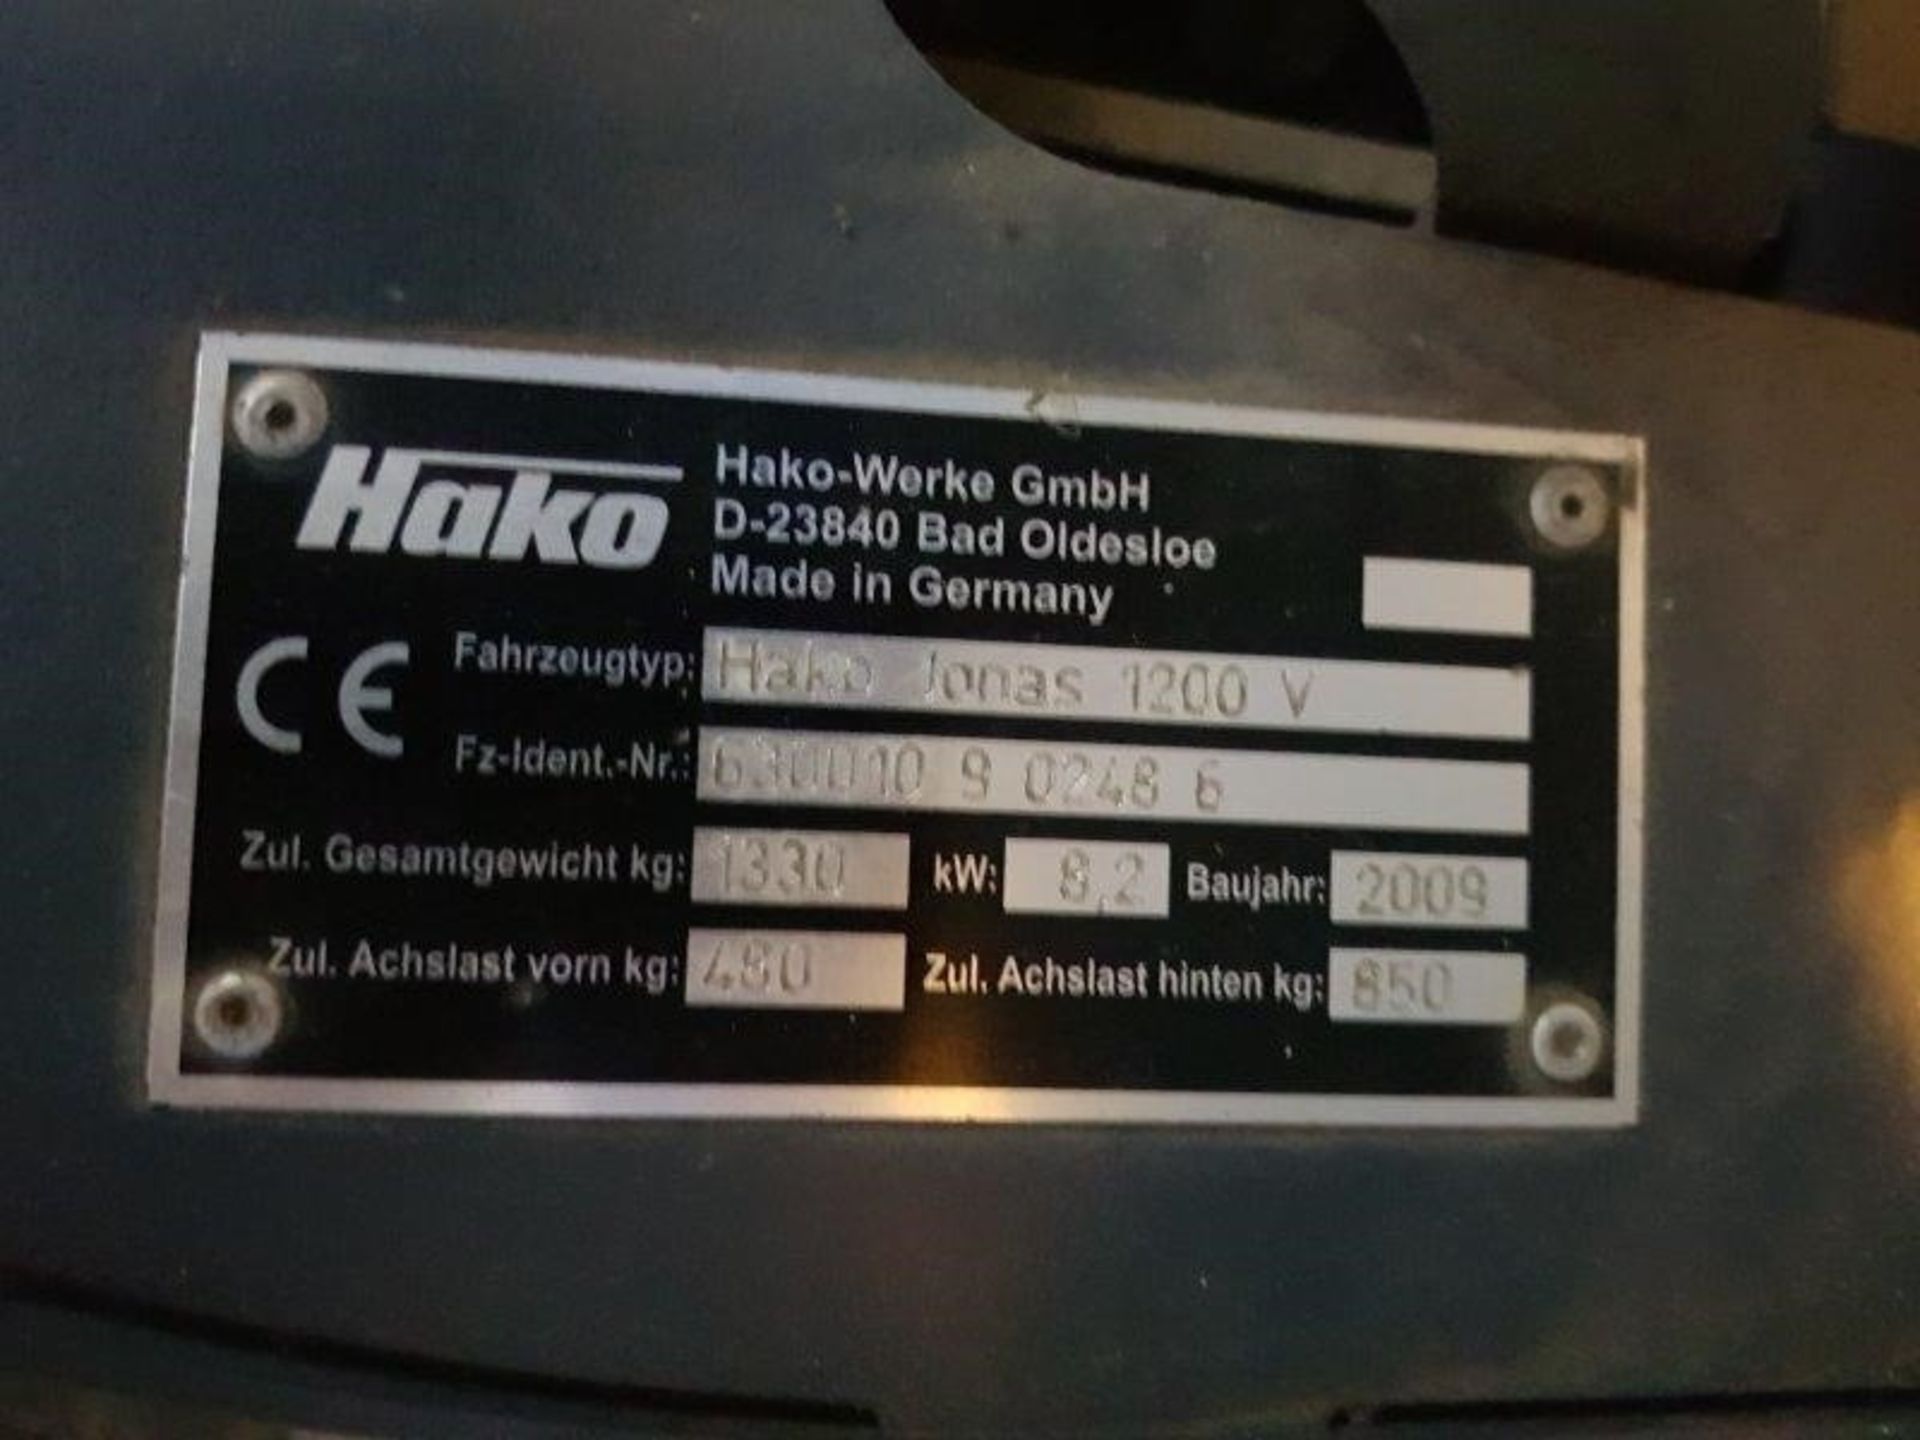 HAKO JONAS 1200V Plant LPG - VIN: 90248600 - Year: 2009 - 1002 Hours - Ride On Sweeper, Non Runner - Image 7 of 7